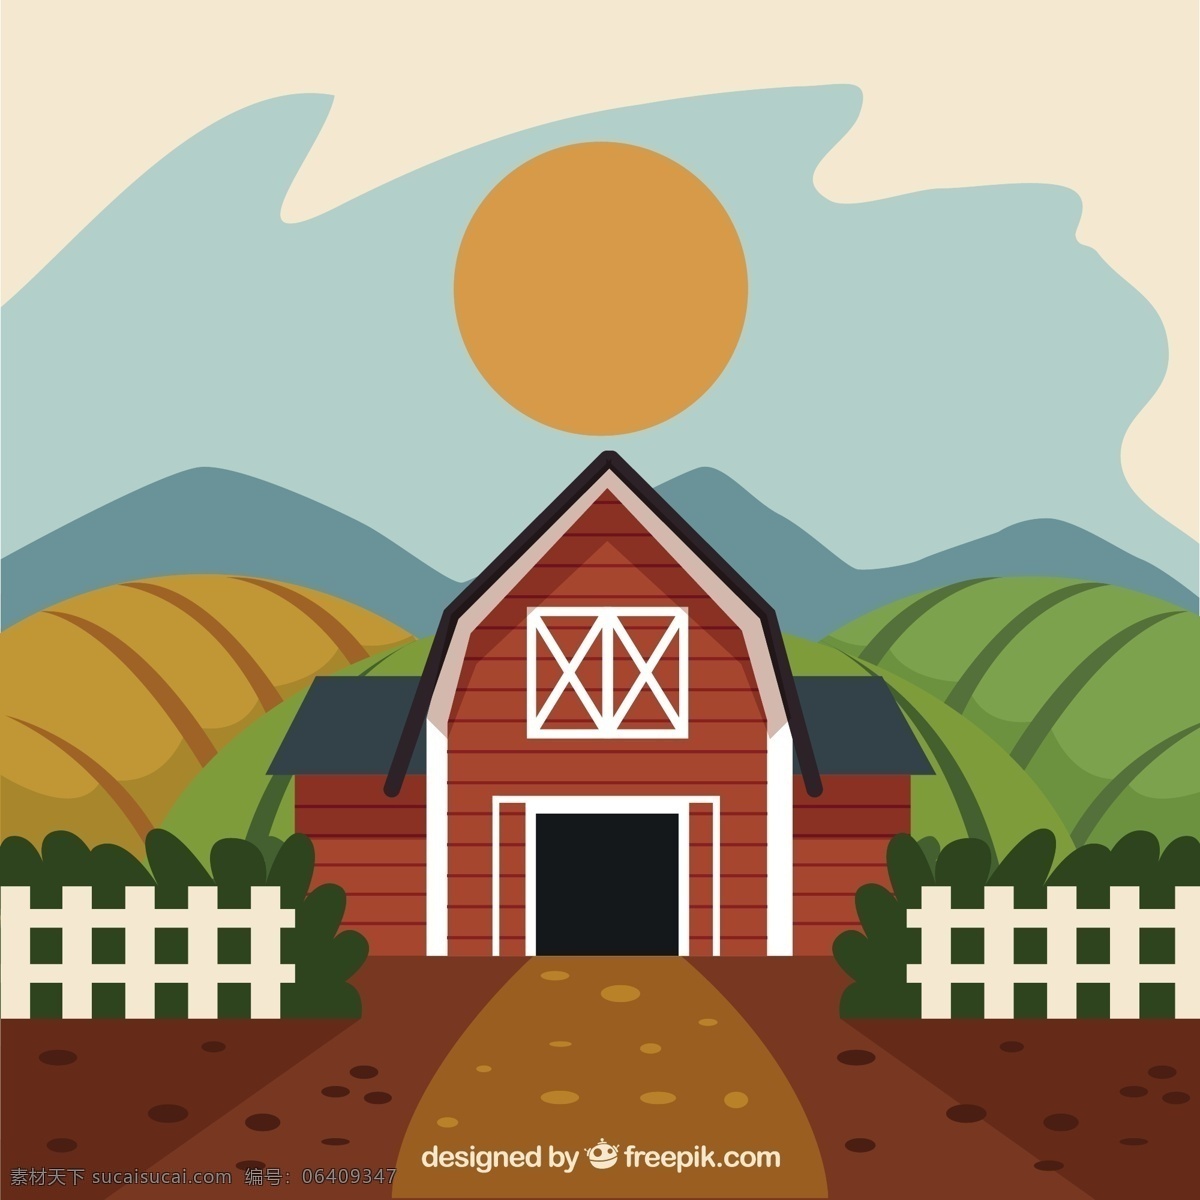 可爱 农场 太阳 自然 风景 蔬菜 生态 有机 环境 围栏 发展 地面 乡村 友好 农业 农村 可持续发展